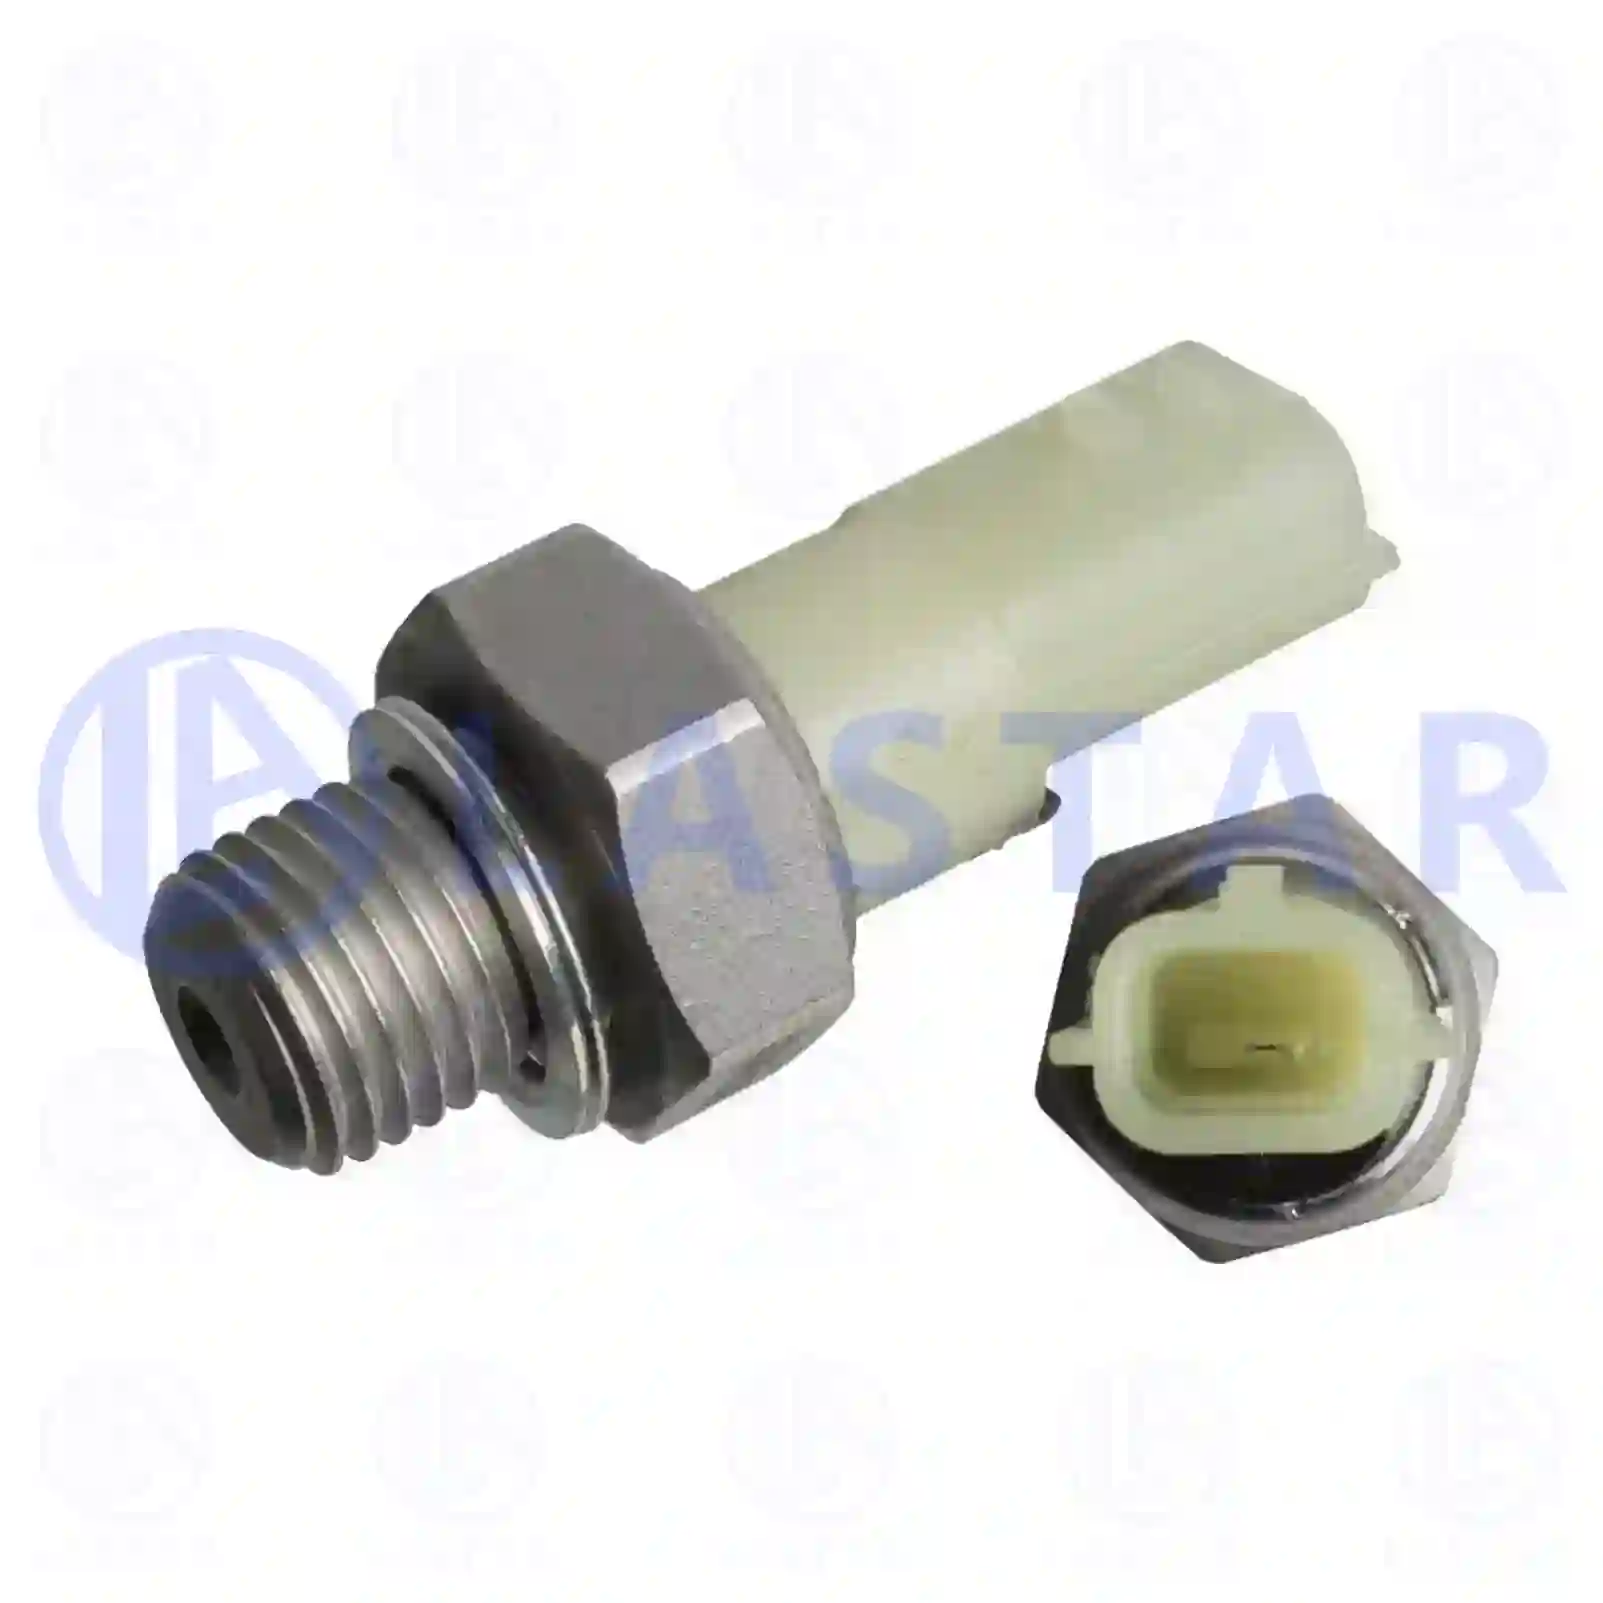 Switch & Sensor Oil pressure switch, la no: 77700327 ,  oem no:6079051400, 25240-00Q0A, 25240-00Q0H, 25240-00QAH, 4431212, 4433805, 8200359627, 8200671272, 37820-67J00-000, 37820-67J01-000 Lastar Spare Part | Truck Spare Parts, Auotomotive Spare Parts